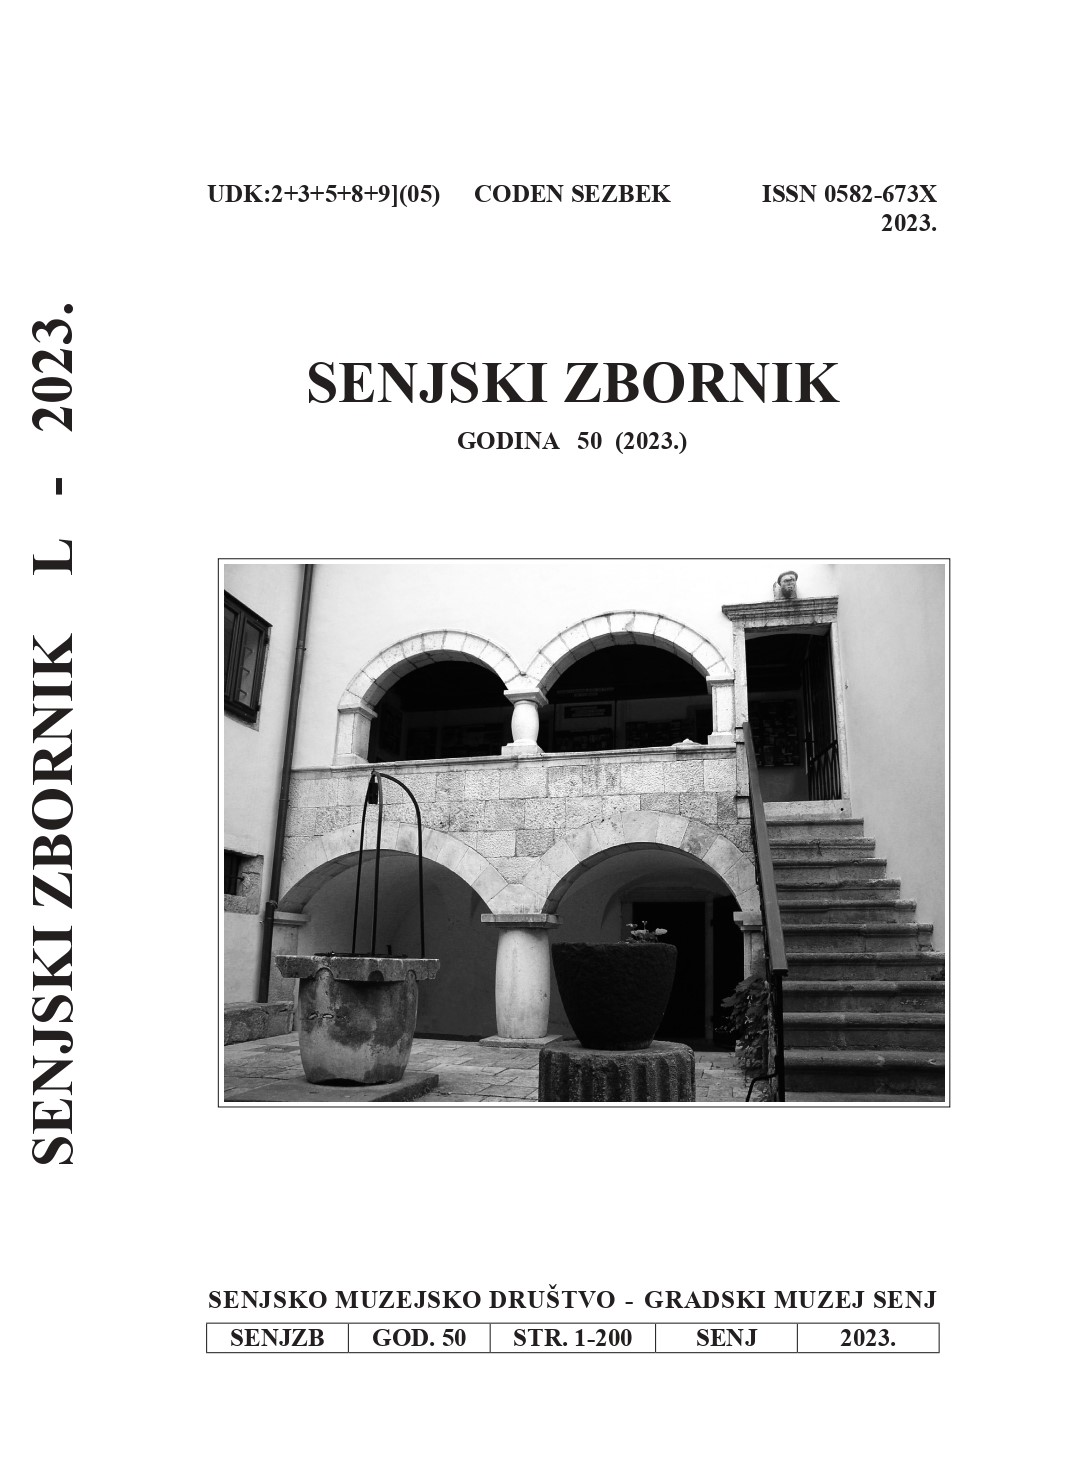 Berčić’s Copy of Senj’s Glagolitic Publication Meštrija Dobra Umrtija and Ritual Cover Image